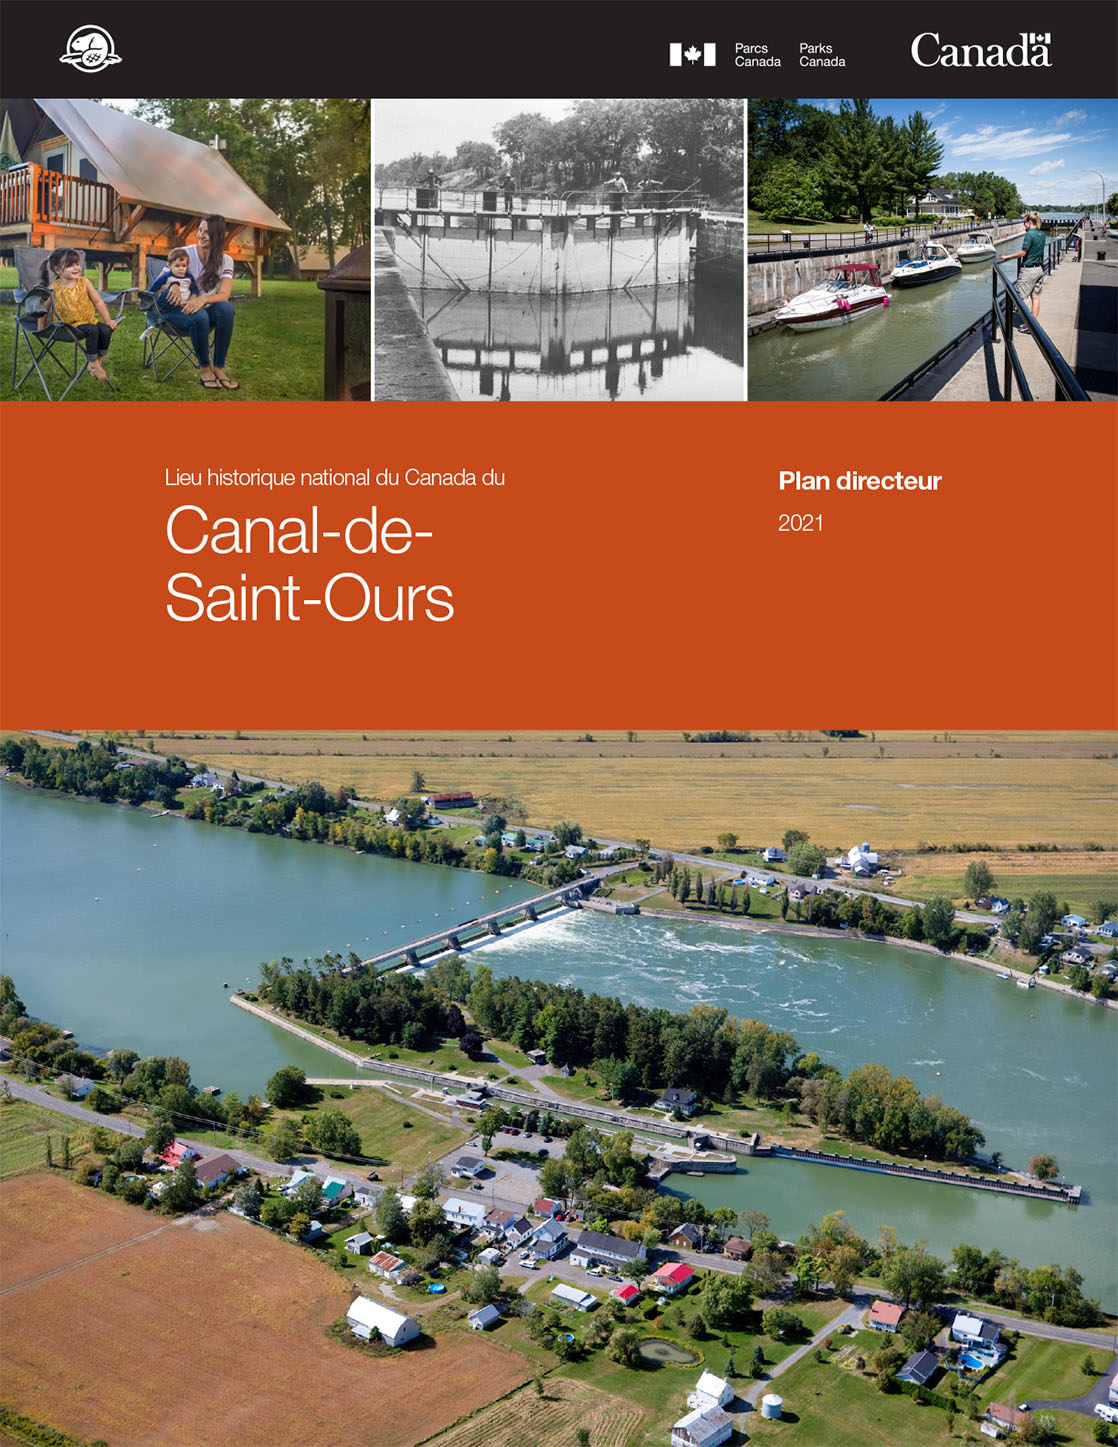 Le plan directeur du lieu historique national du Canada du Canal-de-Saint-Ours page couverture